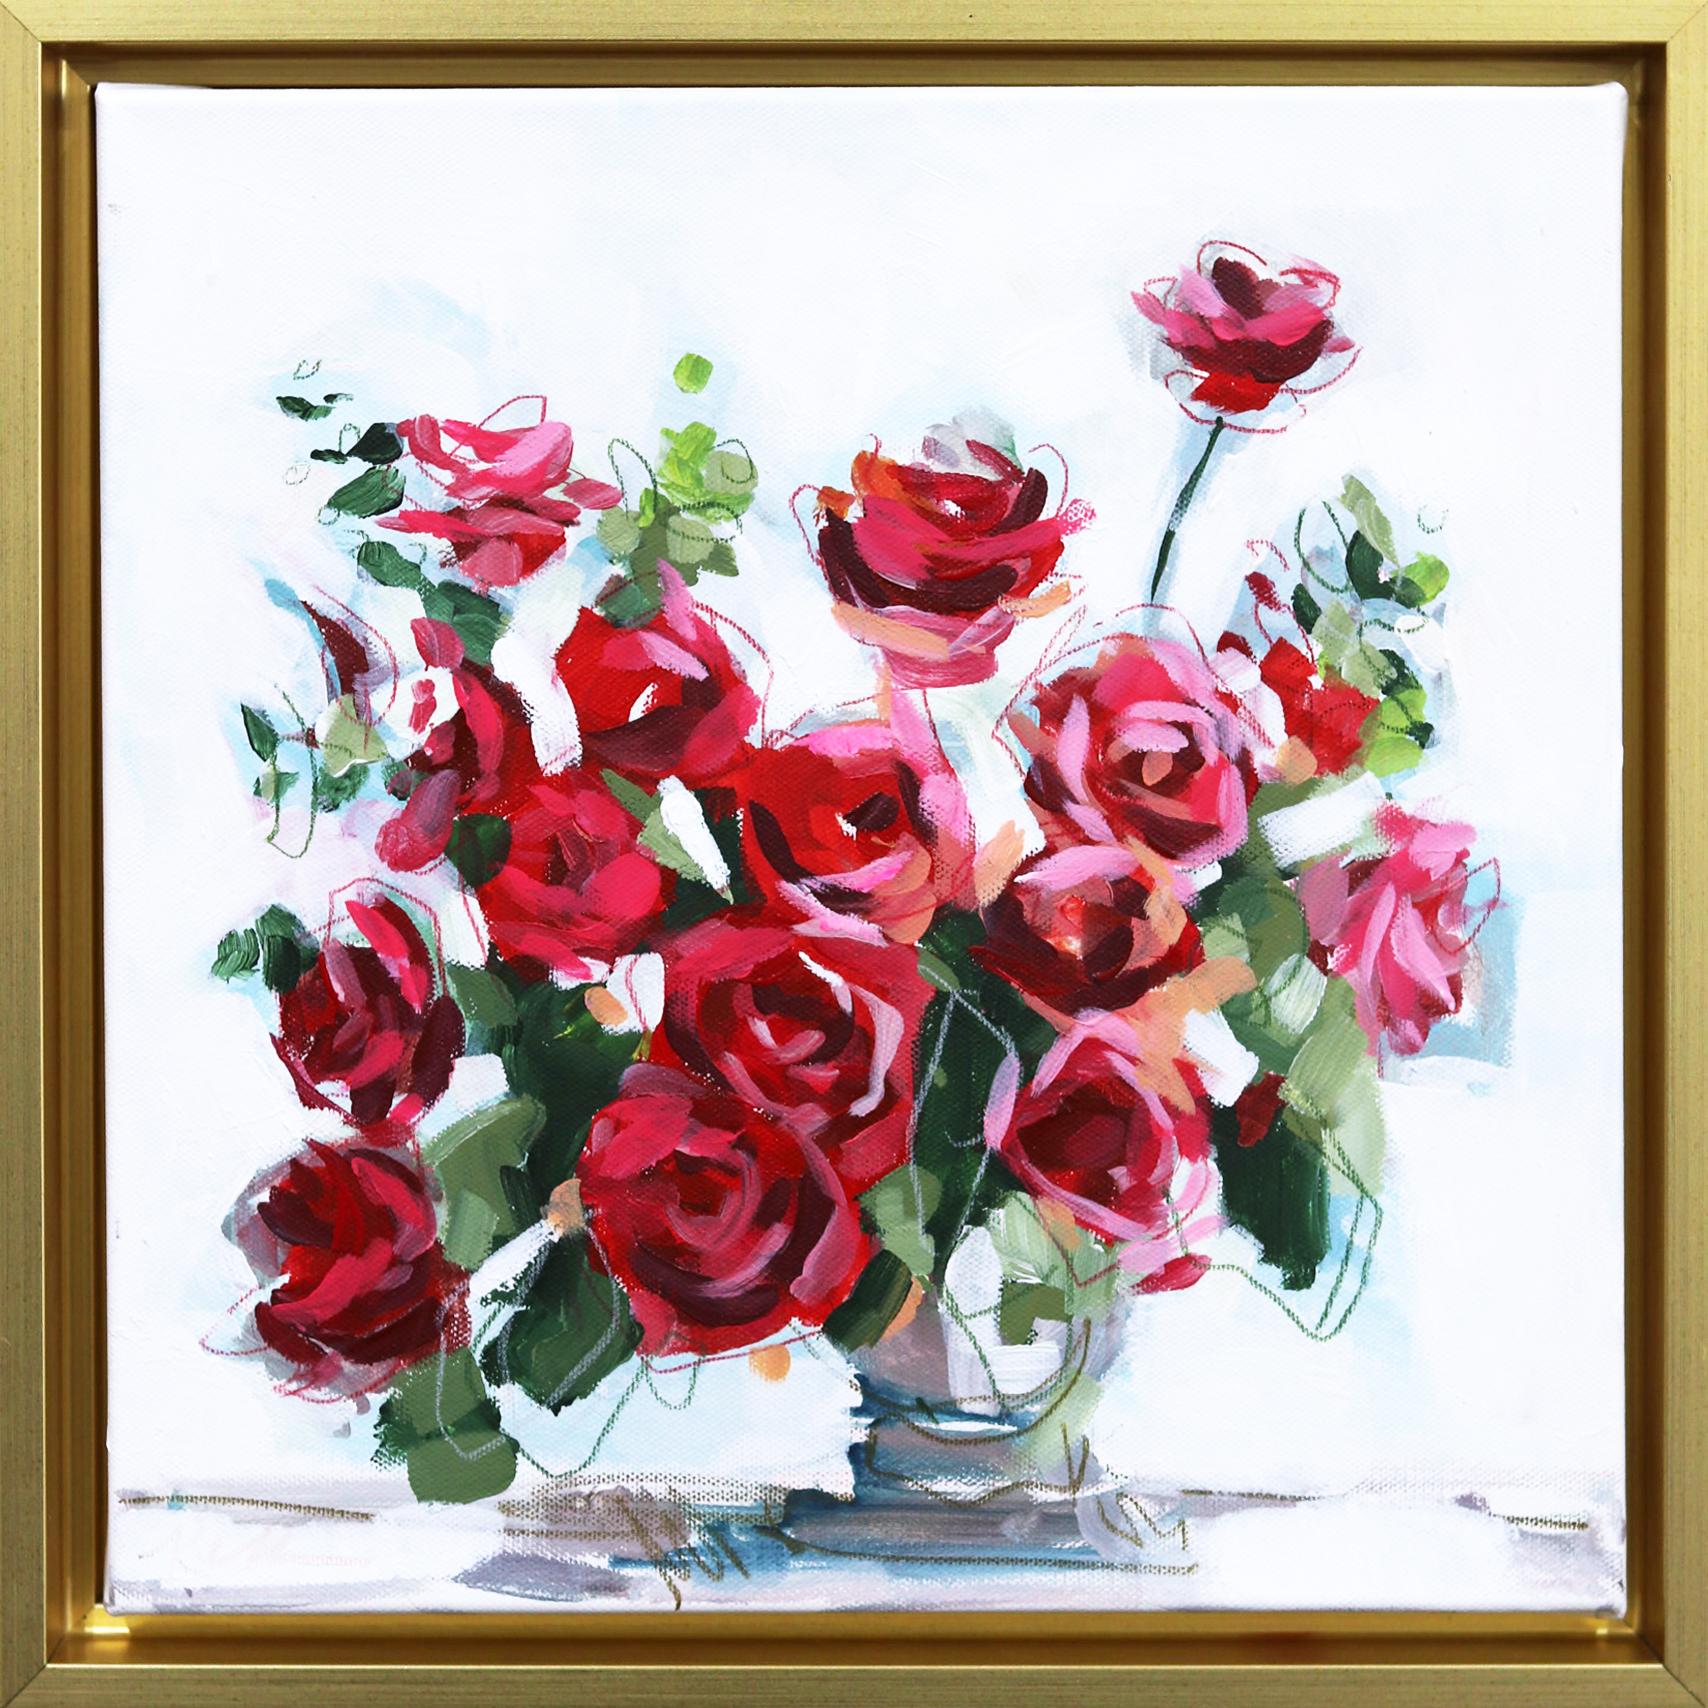 Mehr als ein Dutzend Rosen  - Original gerahmte florale Malerei auf Leinwand